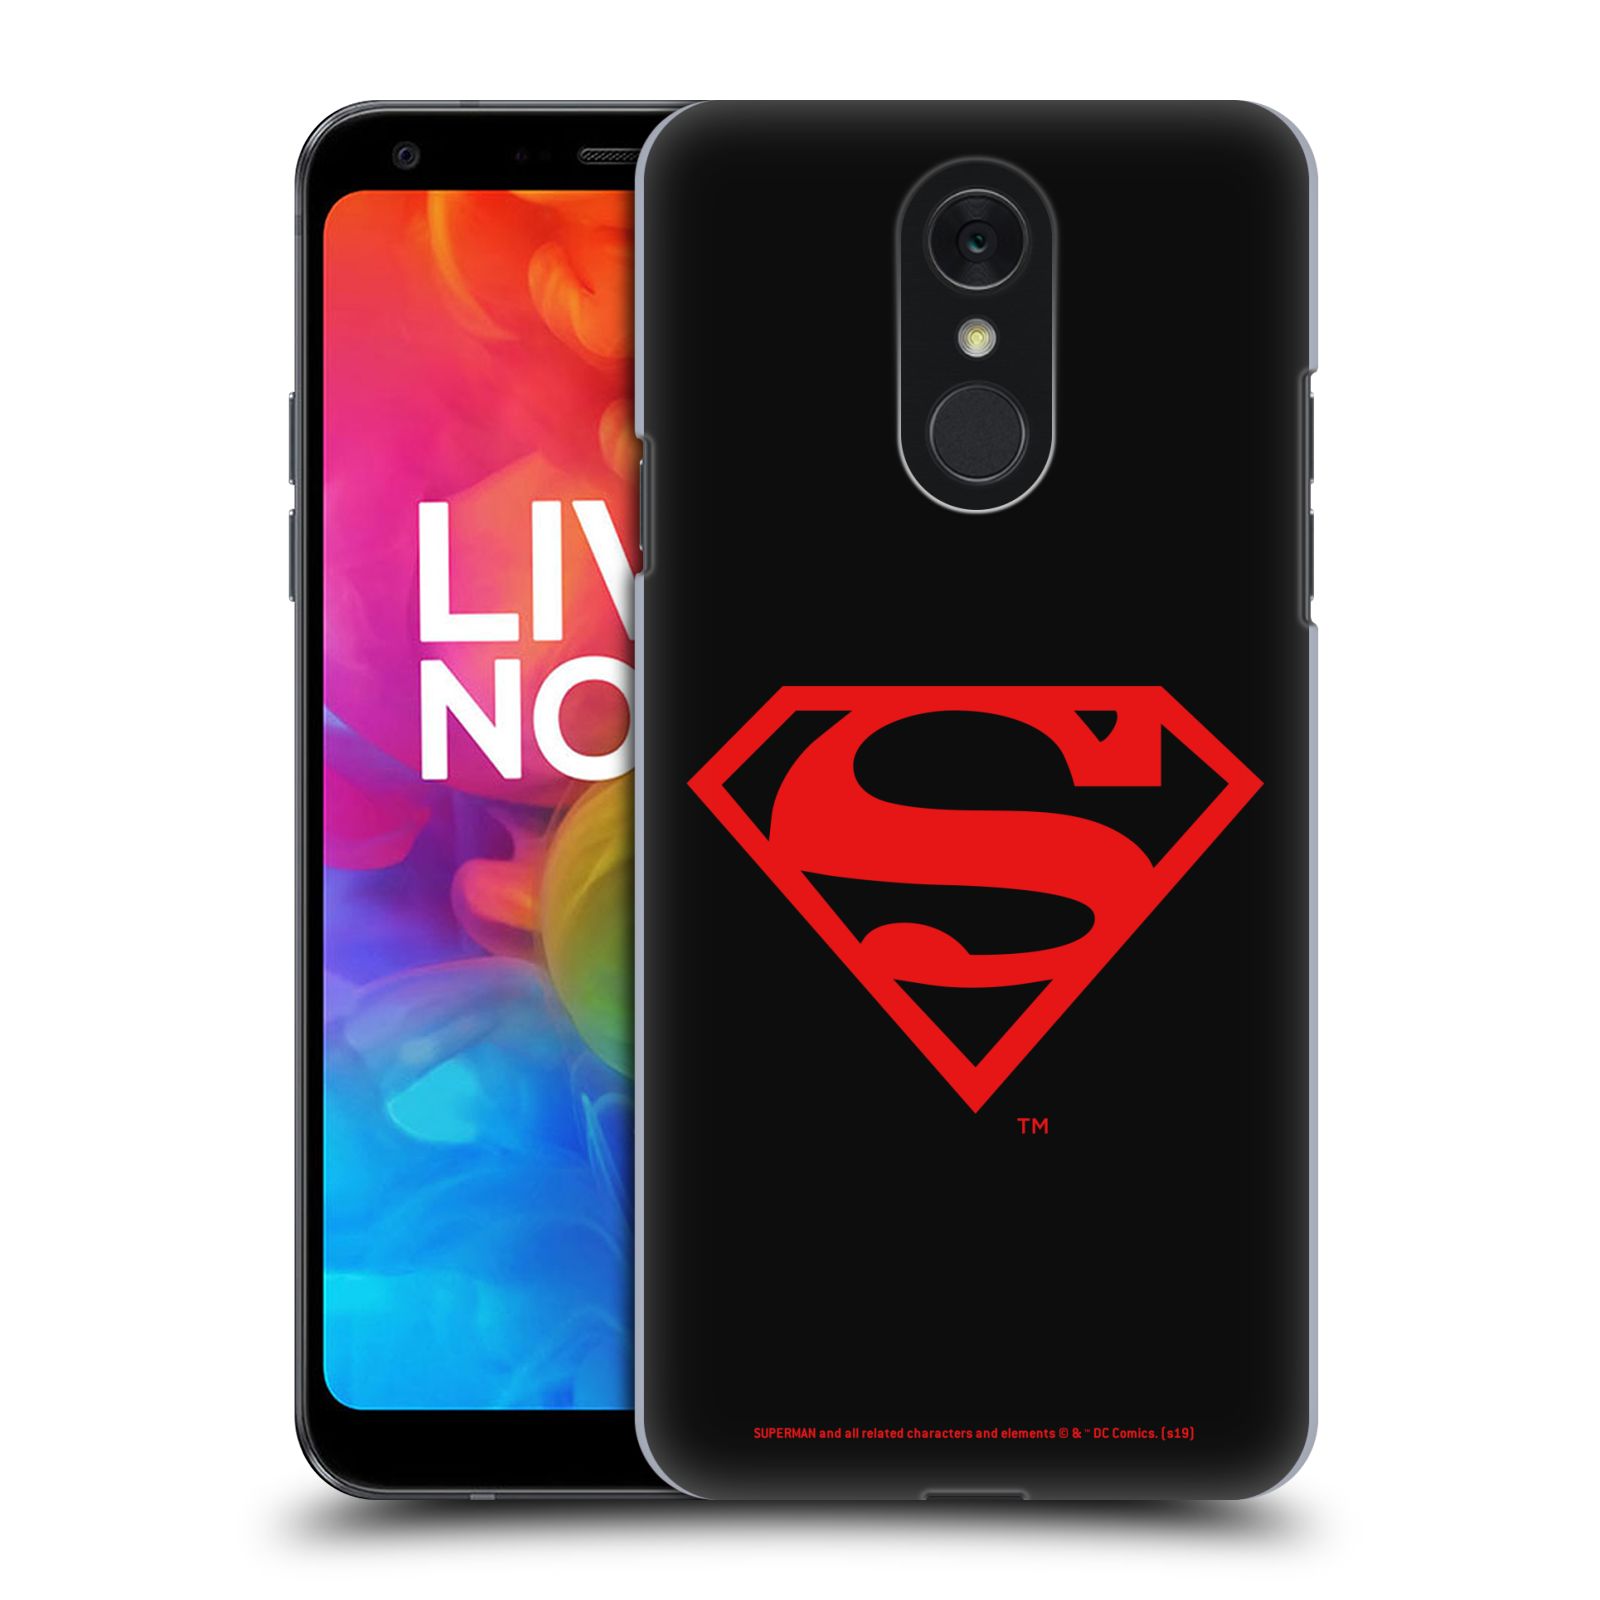 Pouzdro na mobil LG Q7 - HEAD CASE - DC komix Superman červený znak černé pozadí